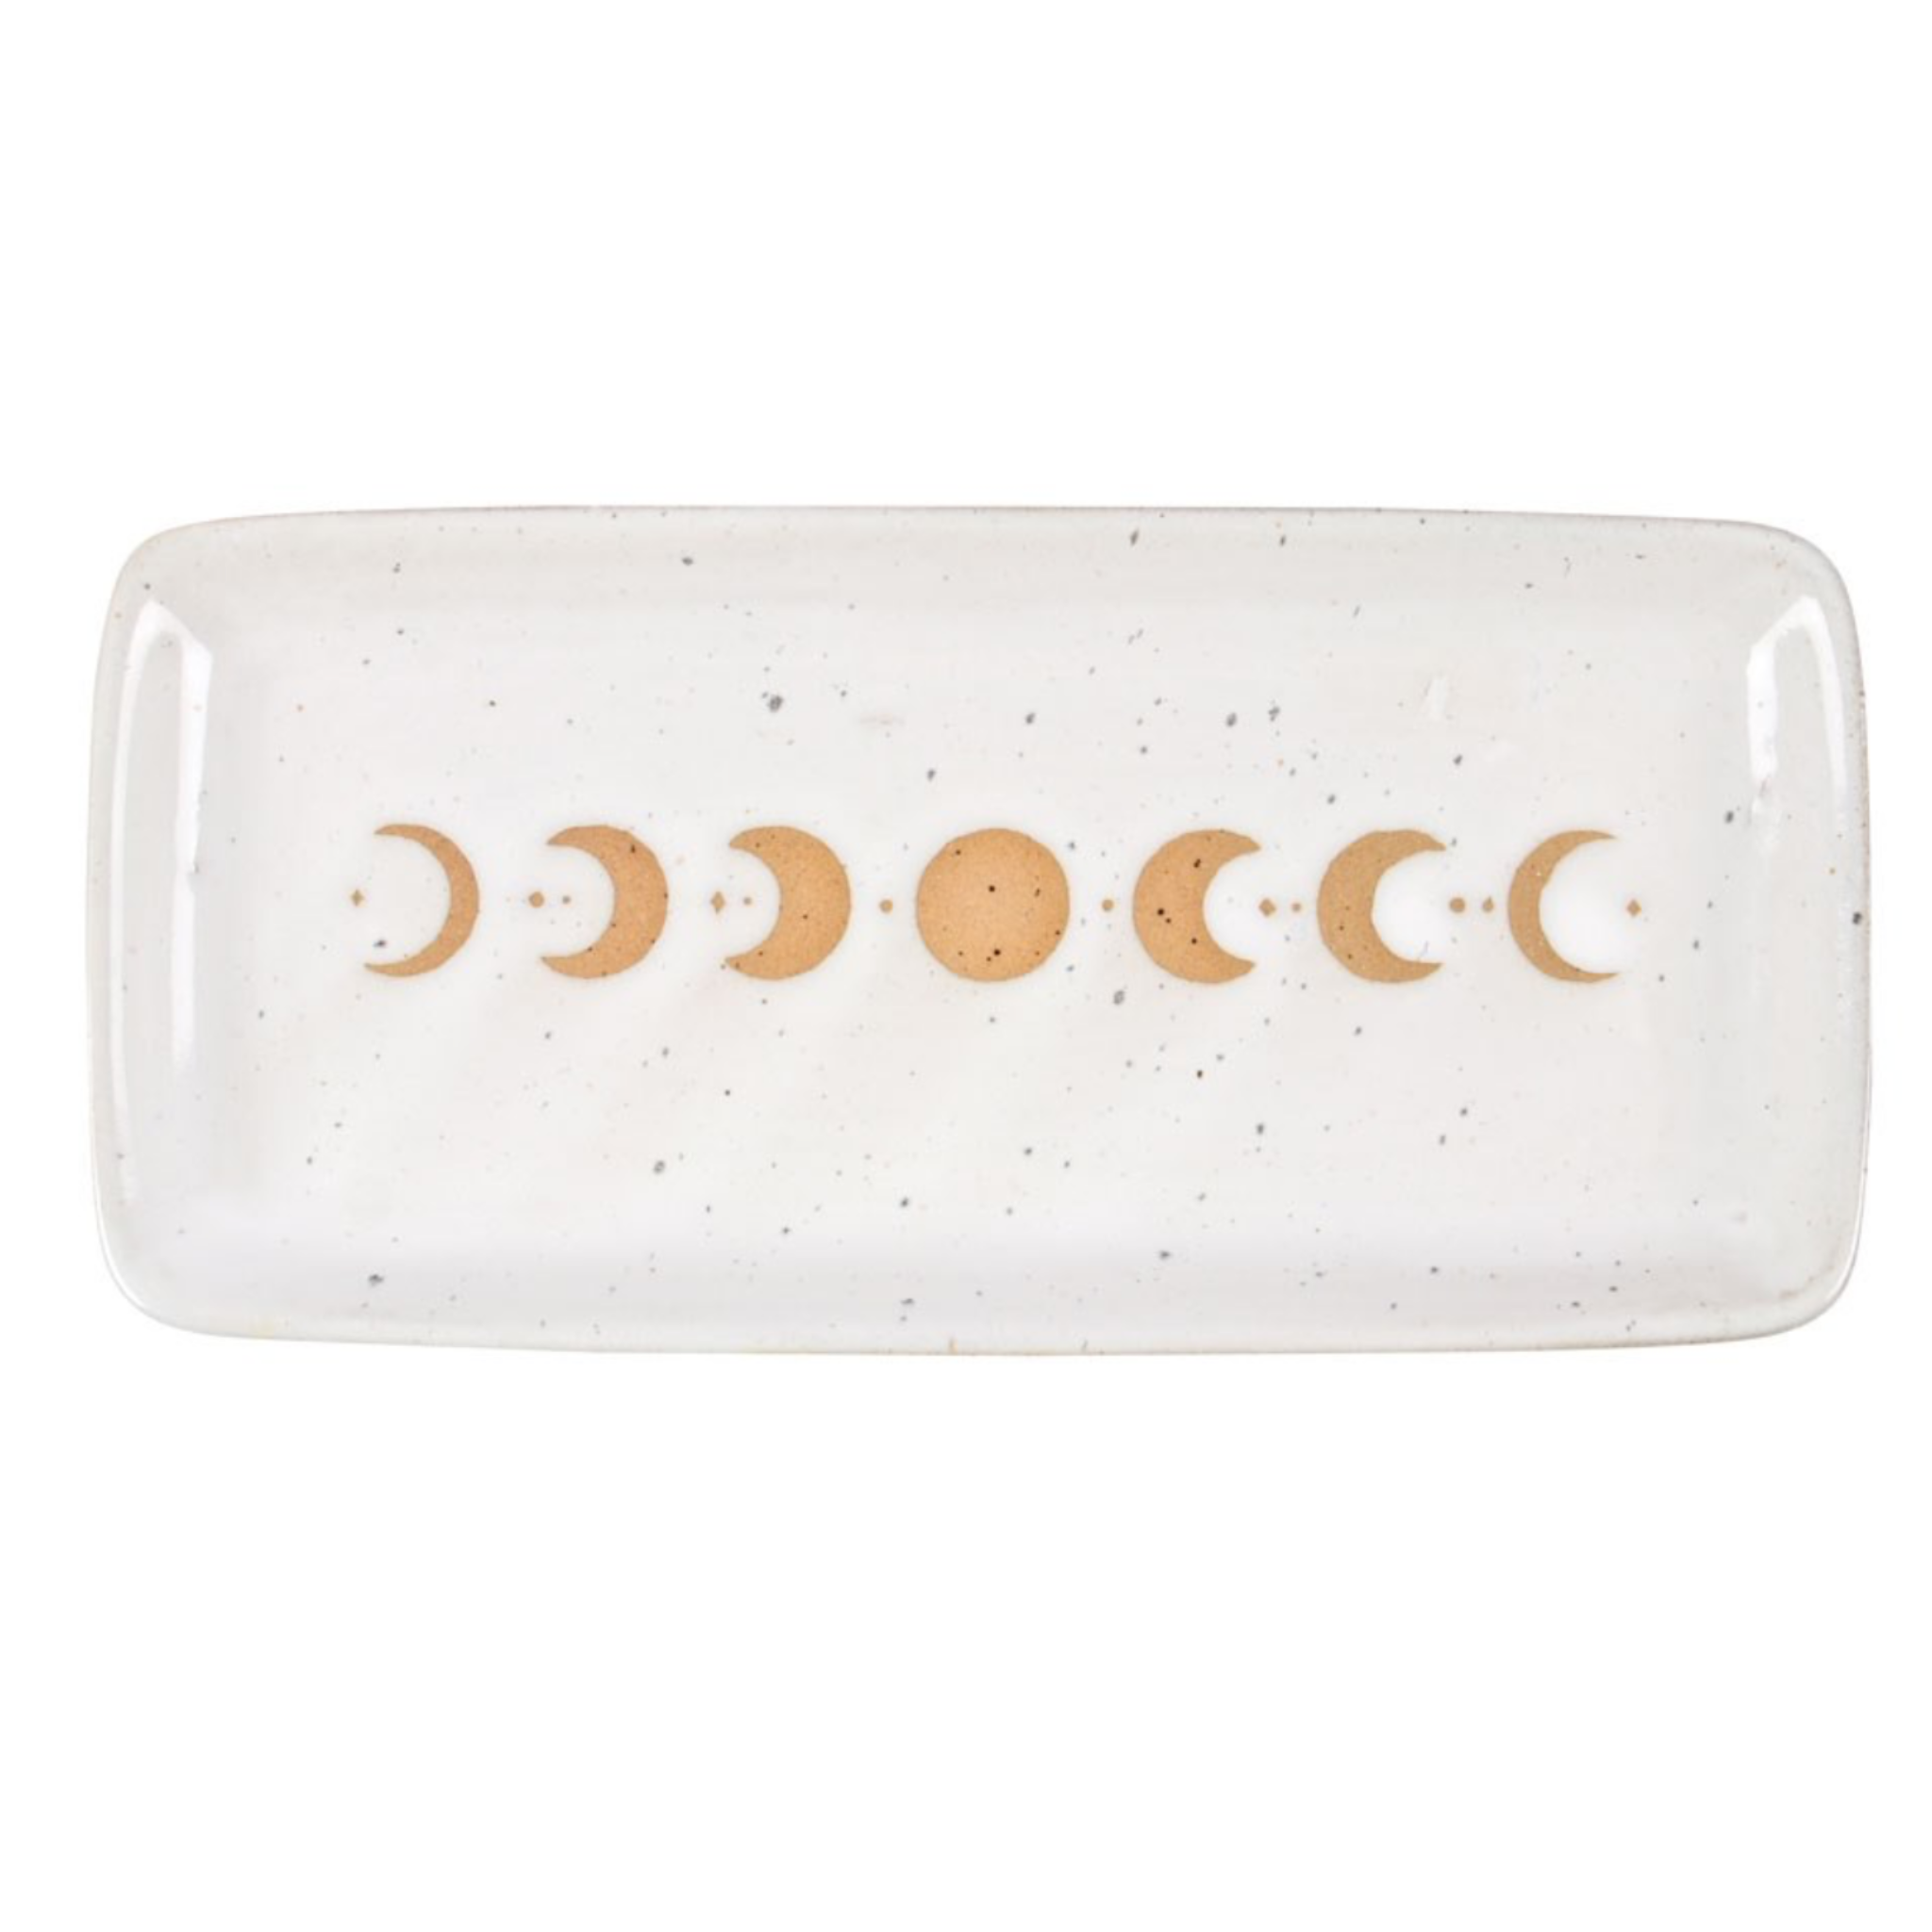 Moon Phase Ceramic Trinket Tray